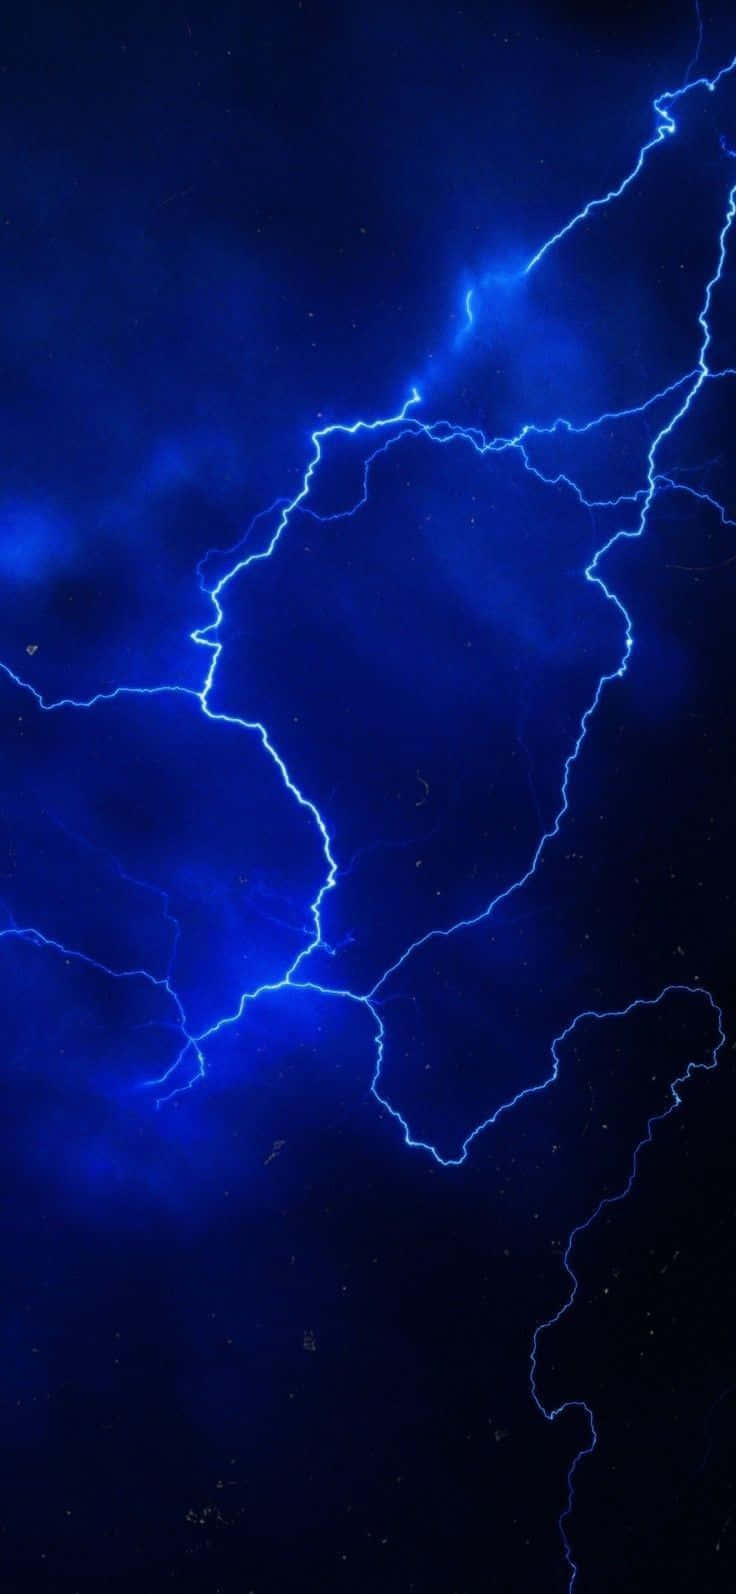 Electric Blue Lightning Aesthetic.jpg Wallpaper